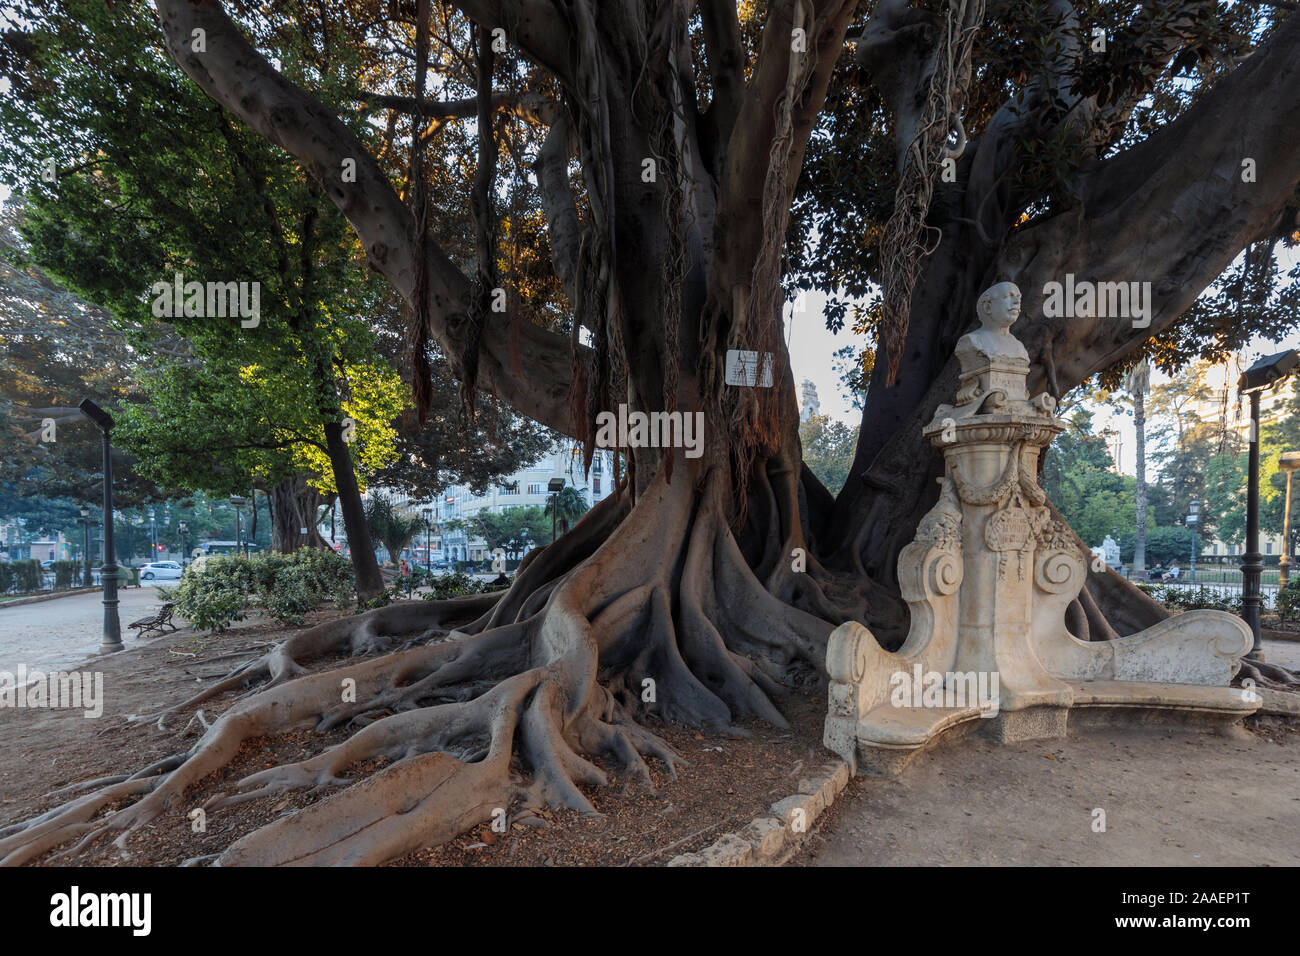 L'arbre étrangleur, Moreton Bay Fig Tree (Ficus macrophylla), à l'origine, importé de l'Australie. Valencia, Espagne, Europe Banque D'Images